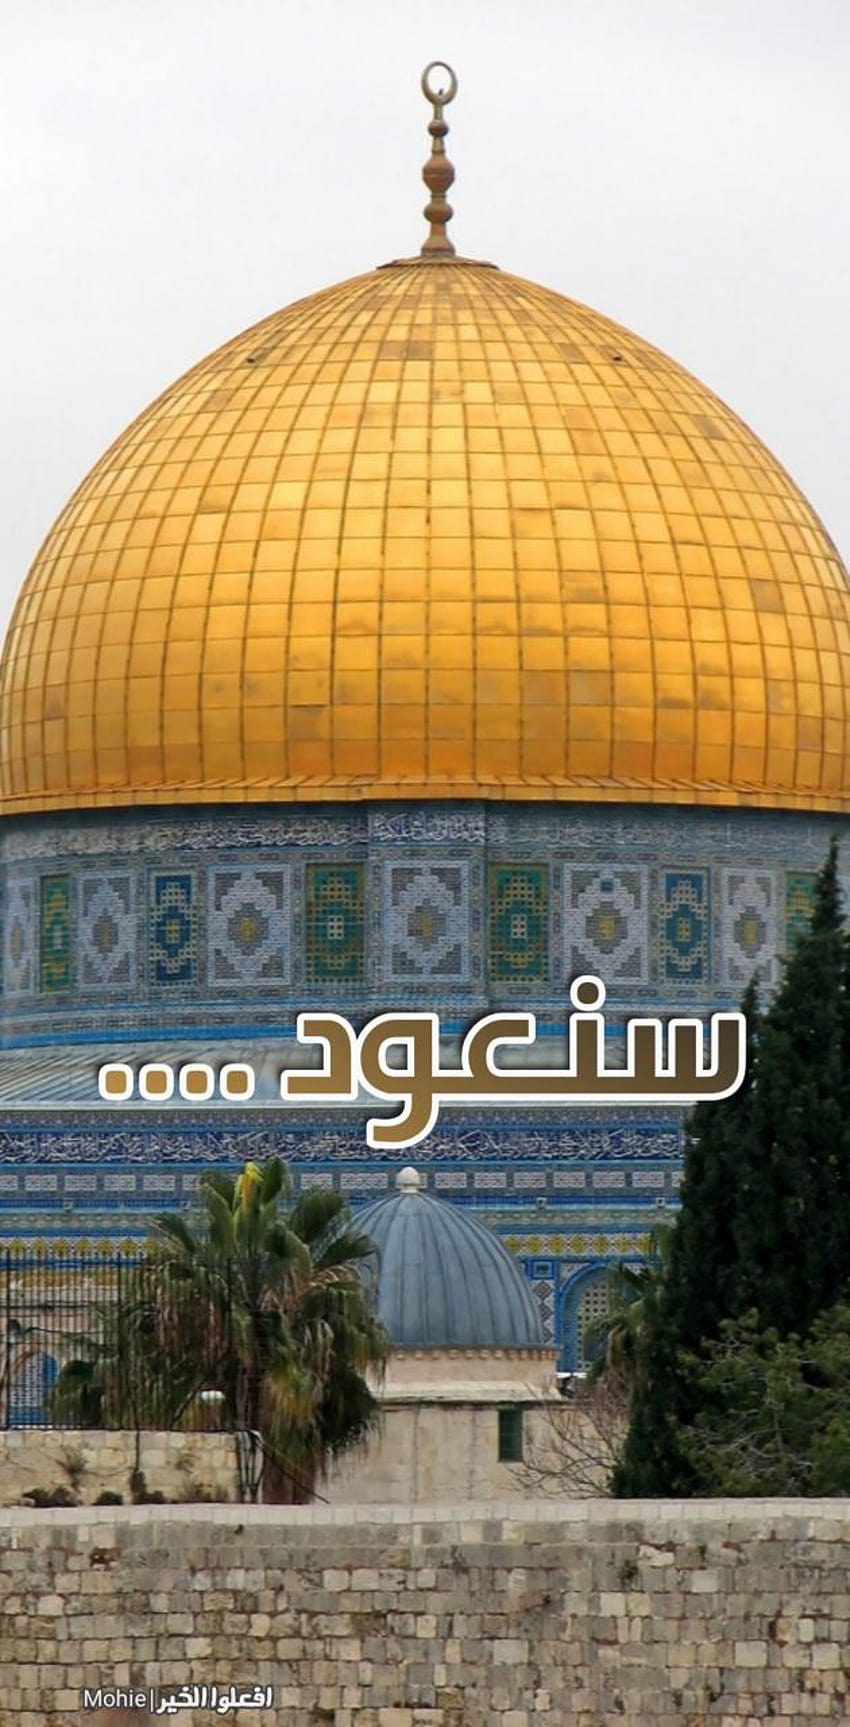 Al Quds oleh Mohie214 wallpaper ponsel HD